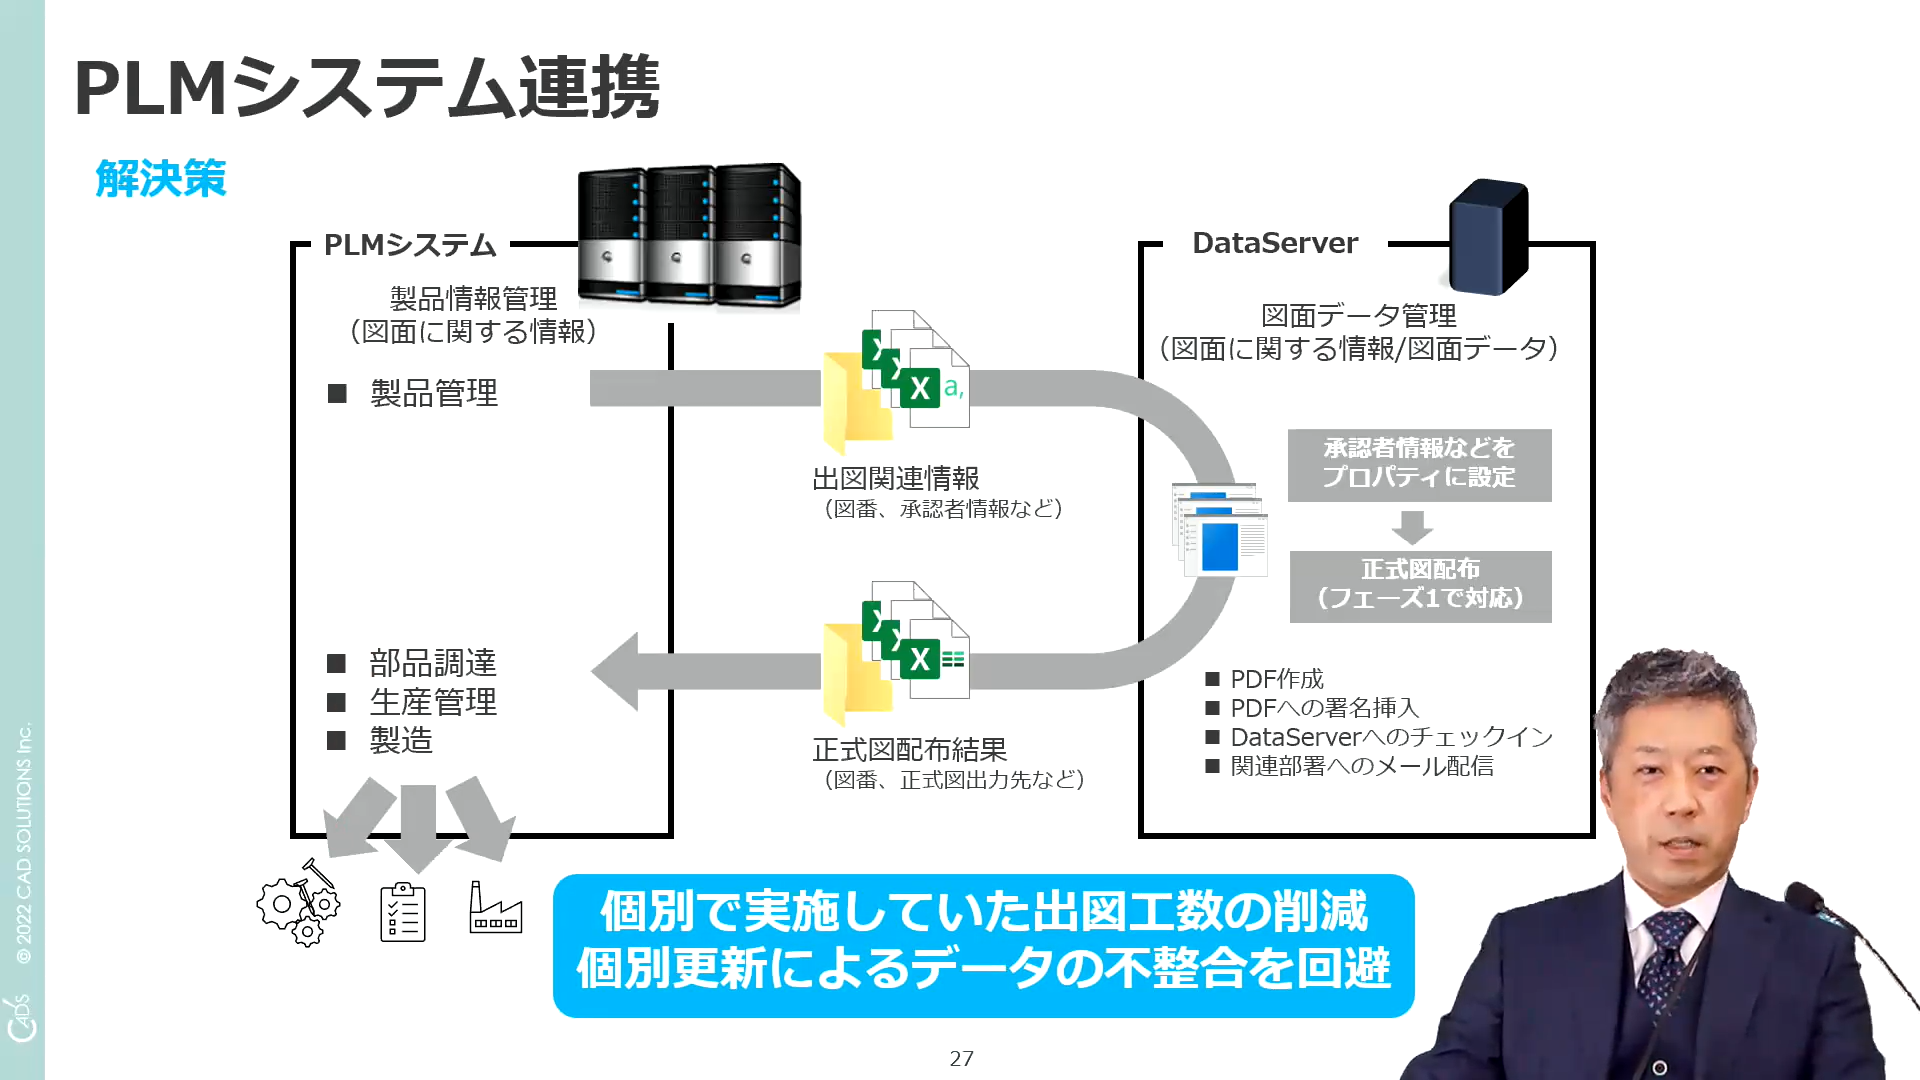 イメージ:お客様事例紹介:DataServerにおける出図の自動化～PLMシステム連携